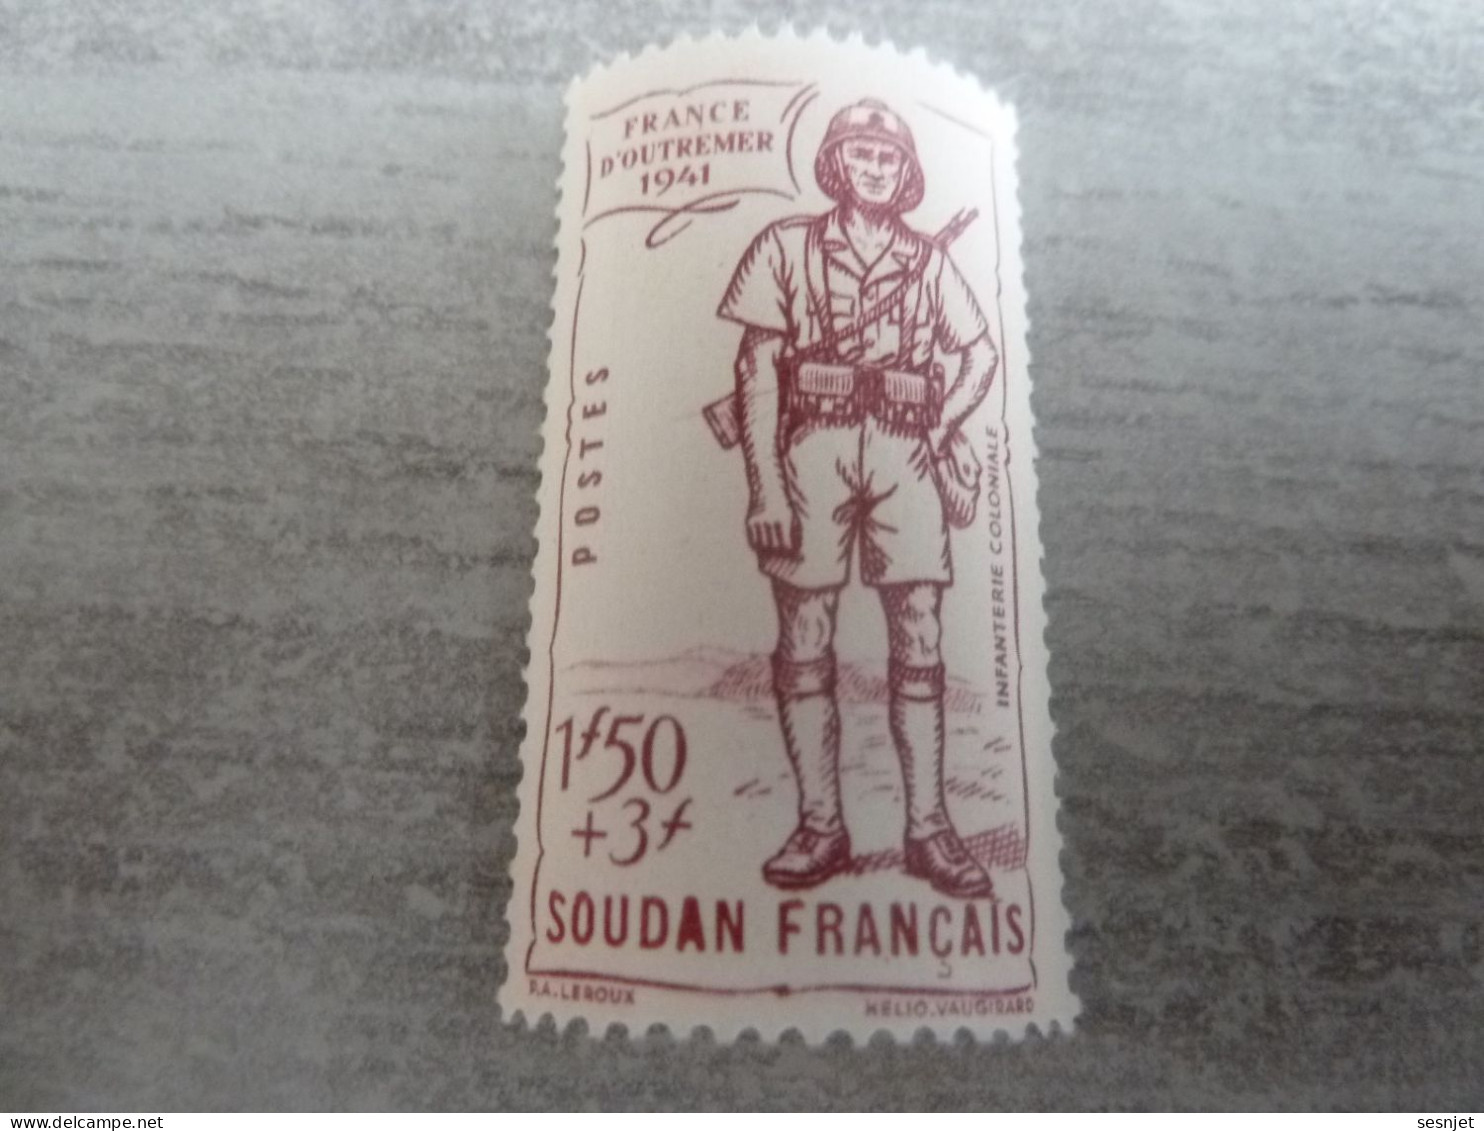 Soudan - Défense De L'Empire - Infanterie Coloniale - 1f.50+3f. - Yt 123 - Lilas - Neuf Sans Trace - Année 1941 - - Neufs